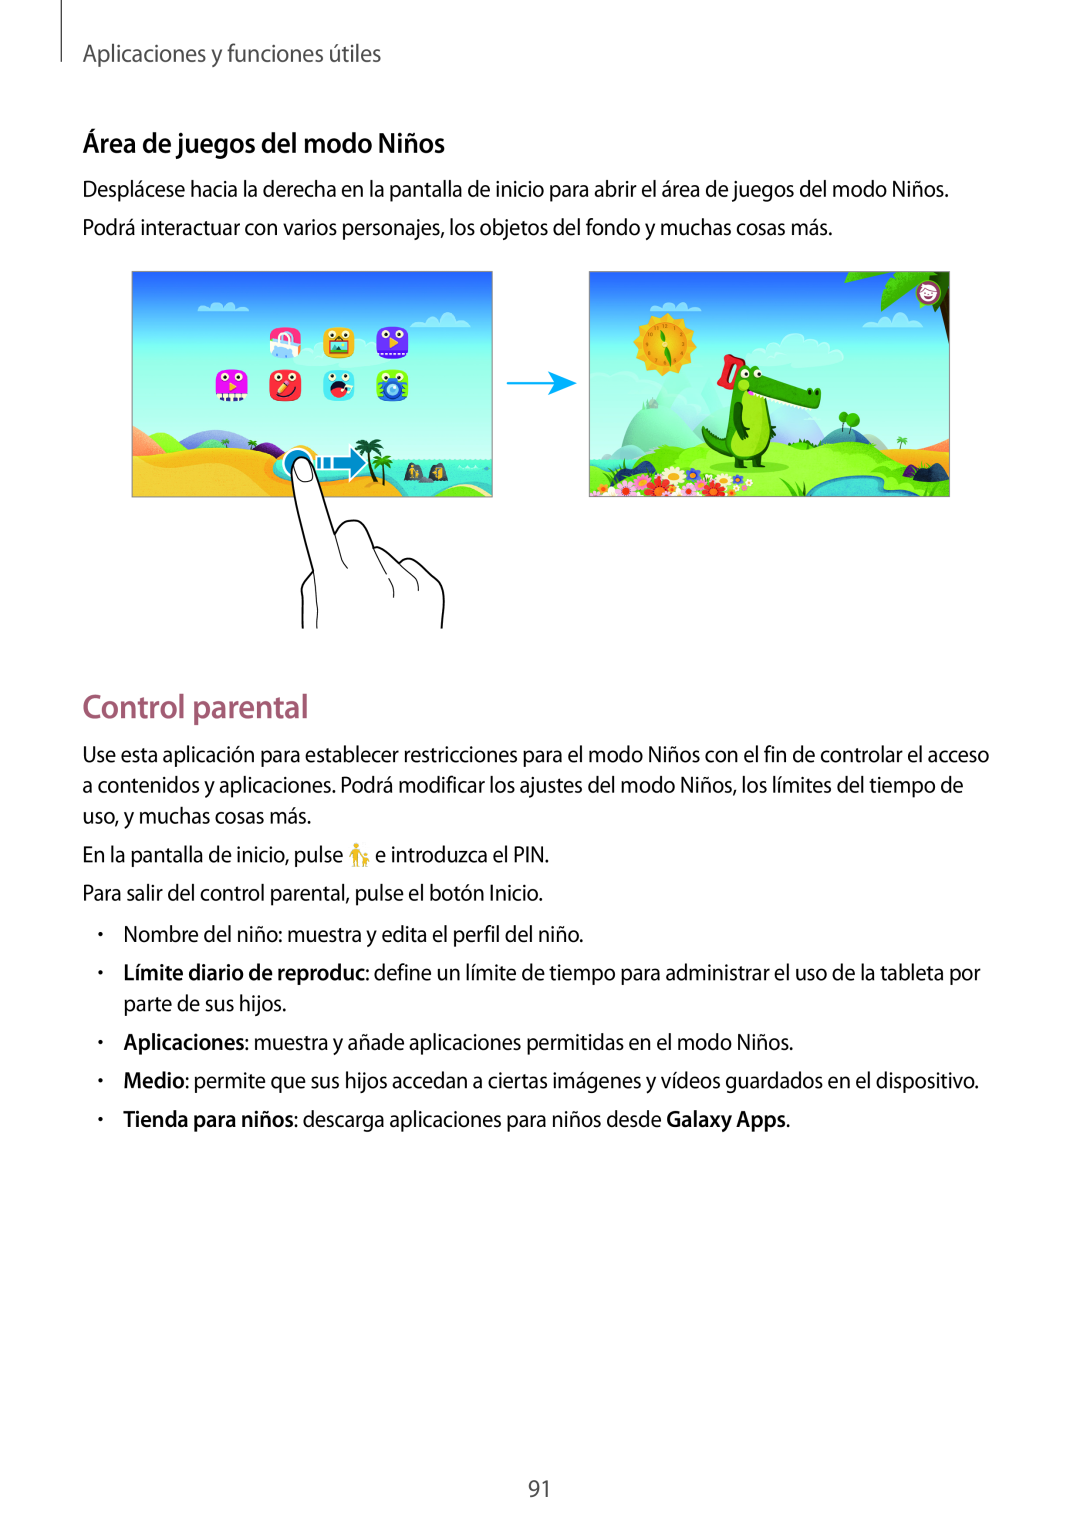 Samsung SM-T700NTSATPH, SM-T700NZWAXEO Control parental, Área de juegos del modo Niños, Aplicaciones y funciones útiles 